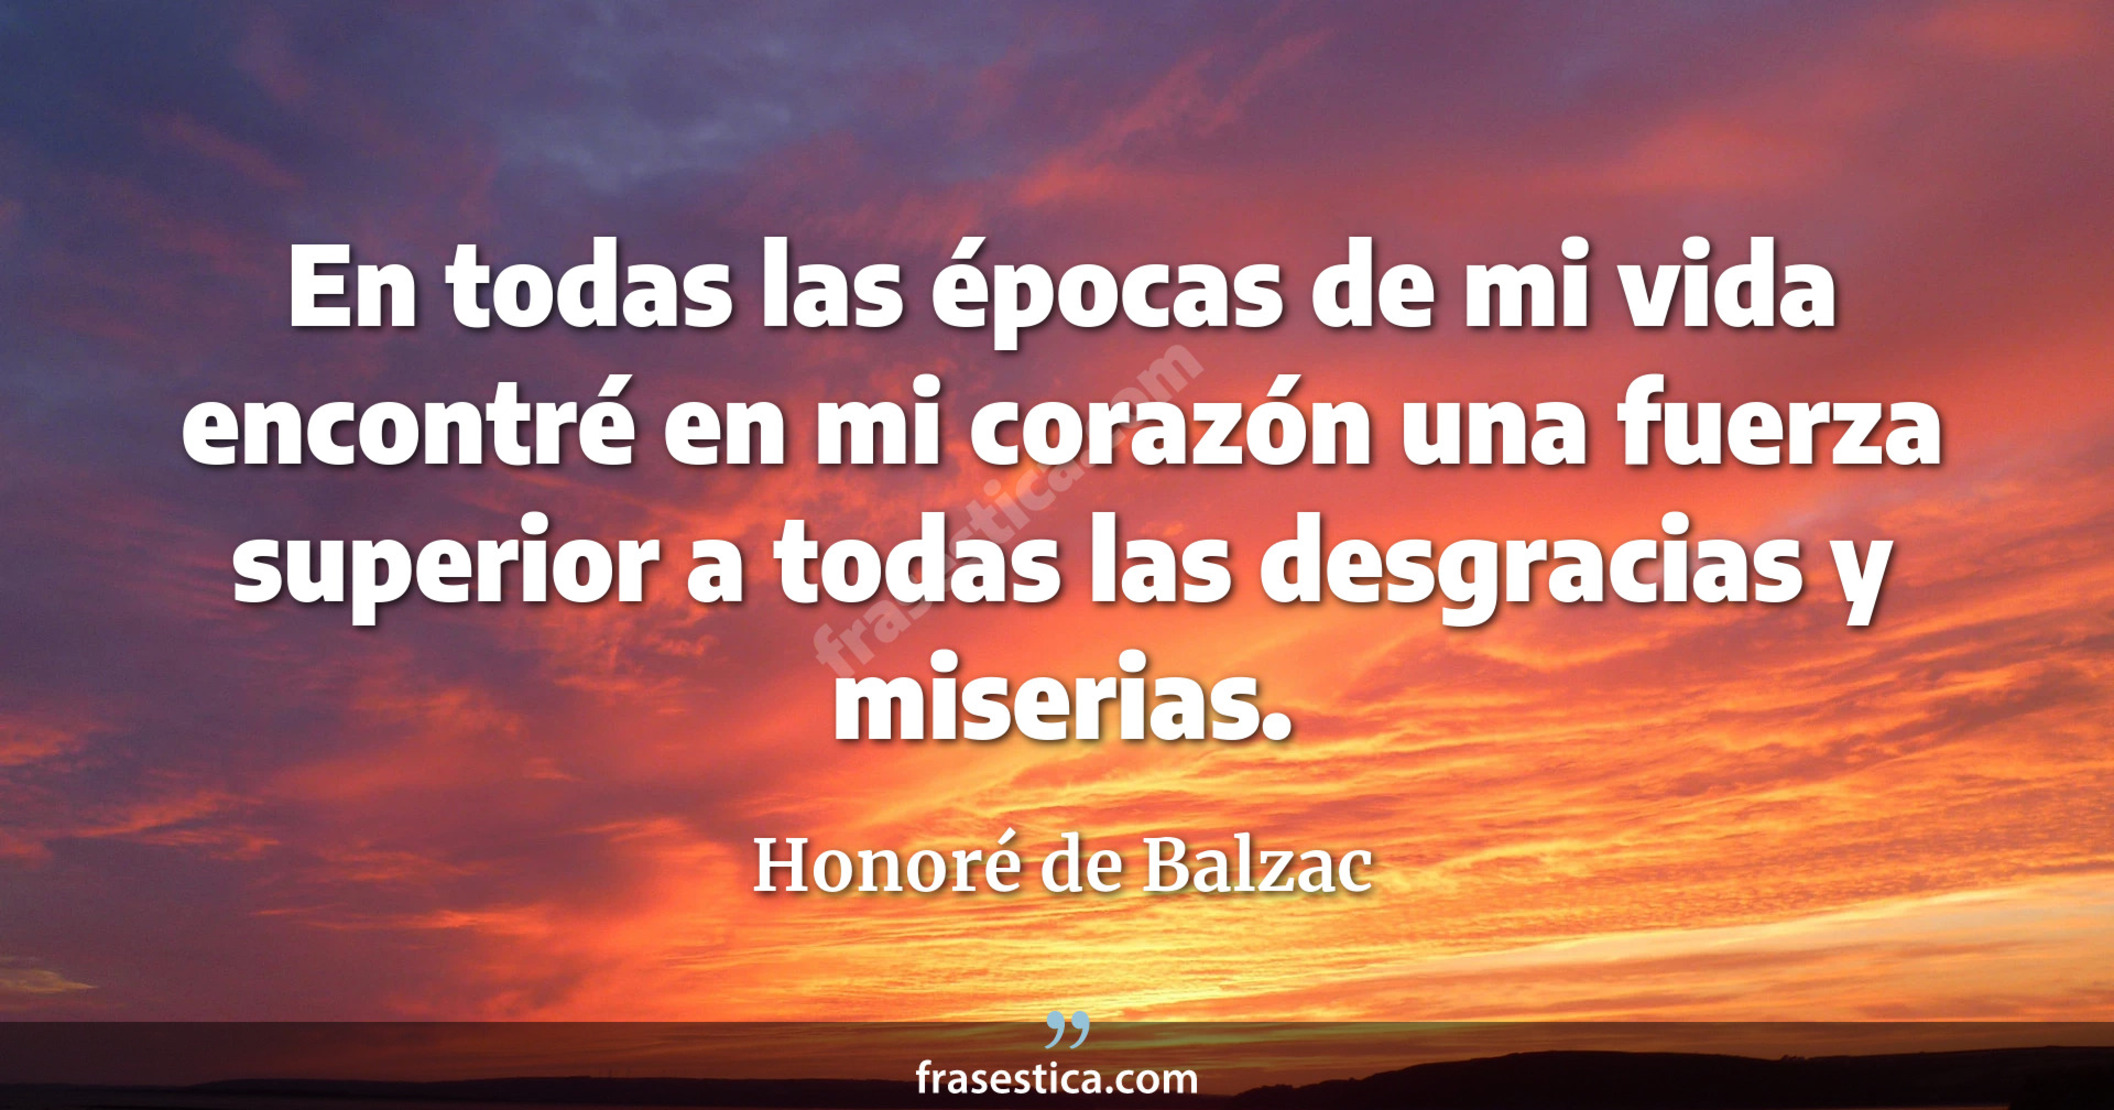 En todas las épocas de mi vida encontré en mi corazón una fuerza superior a todas las desgracias y miserias. - Honoré de Balzac